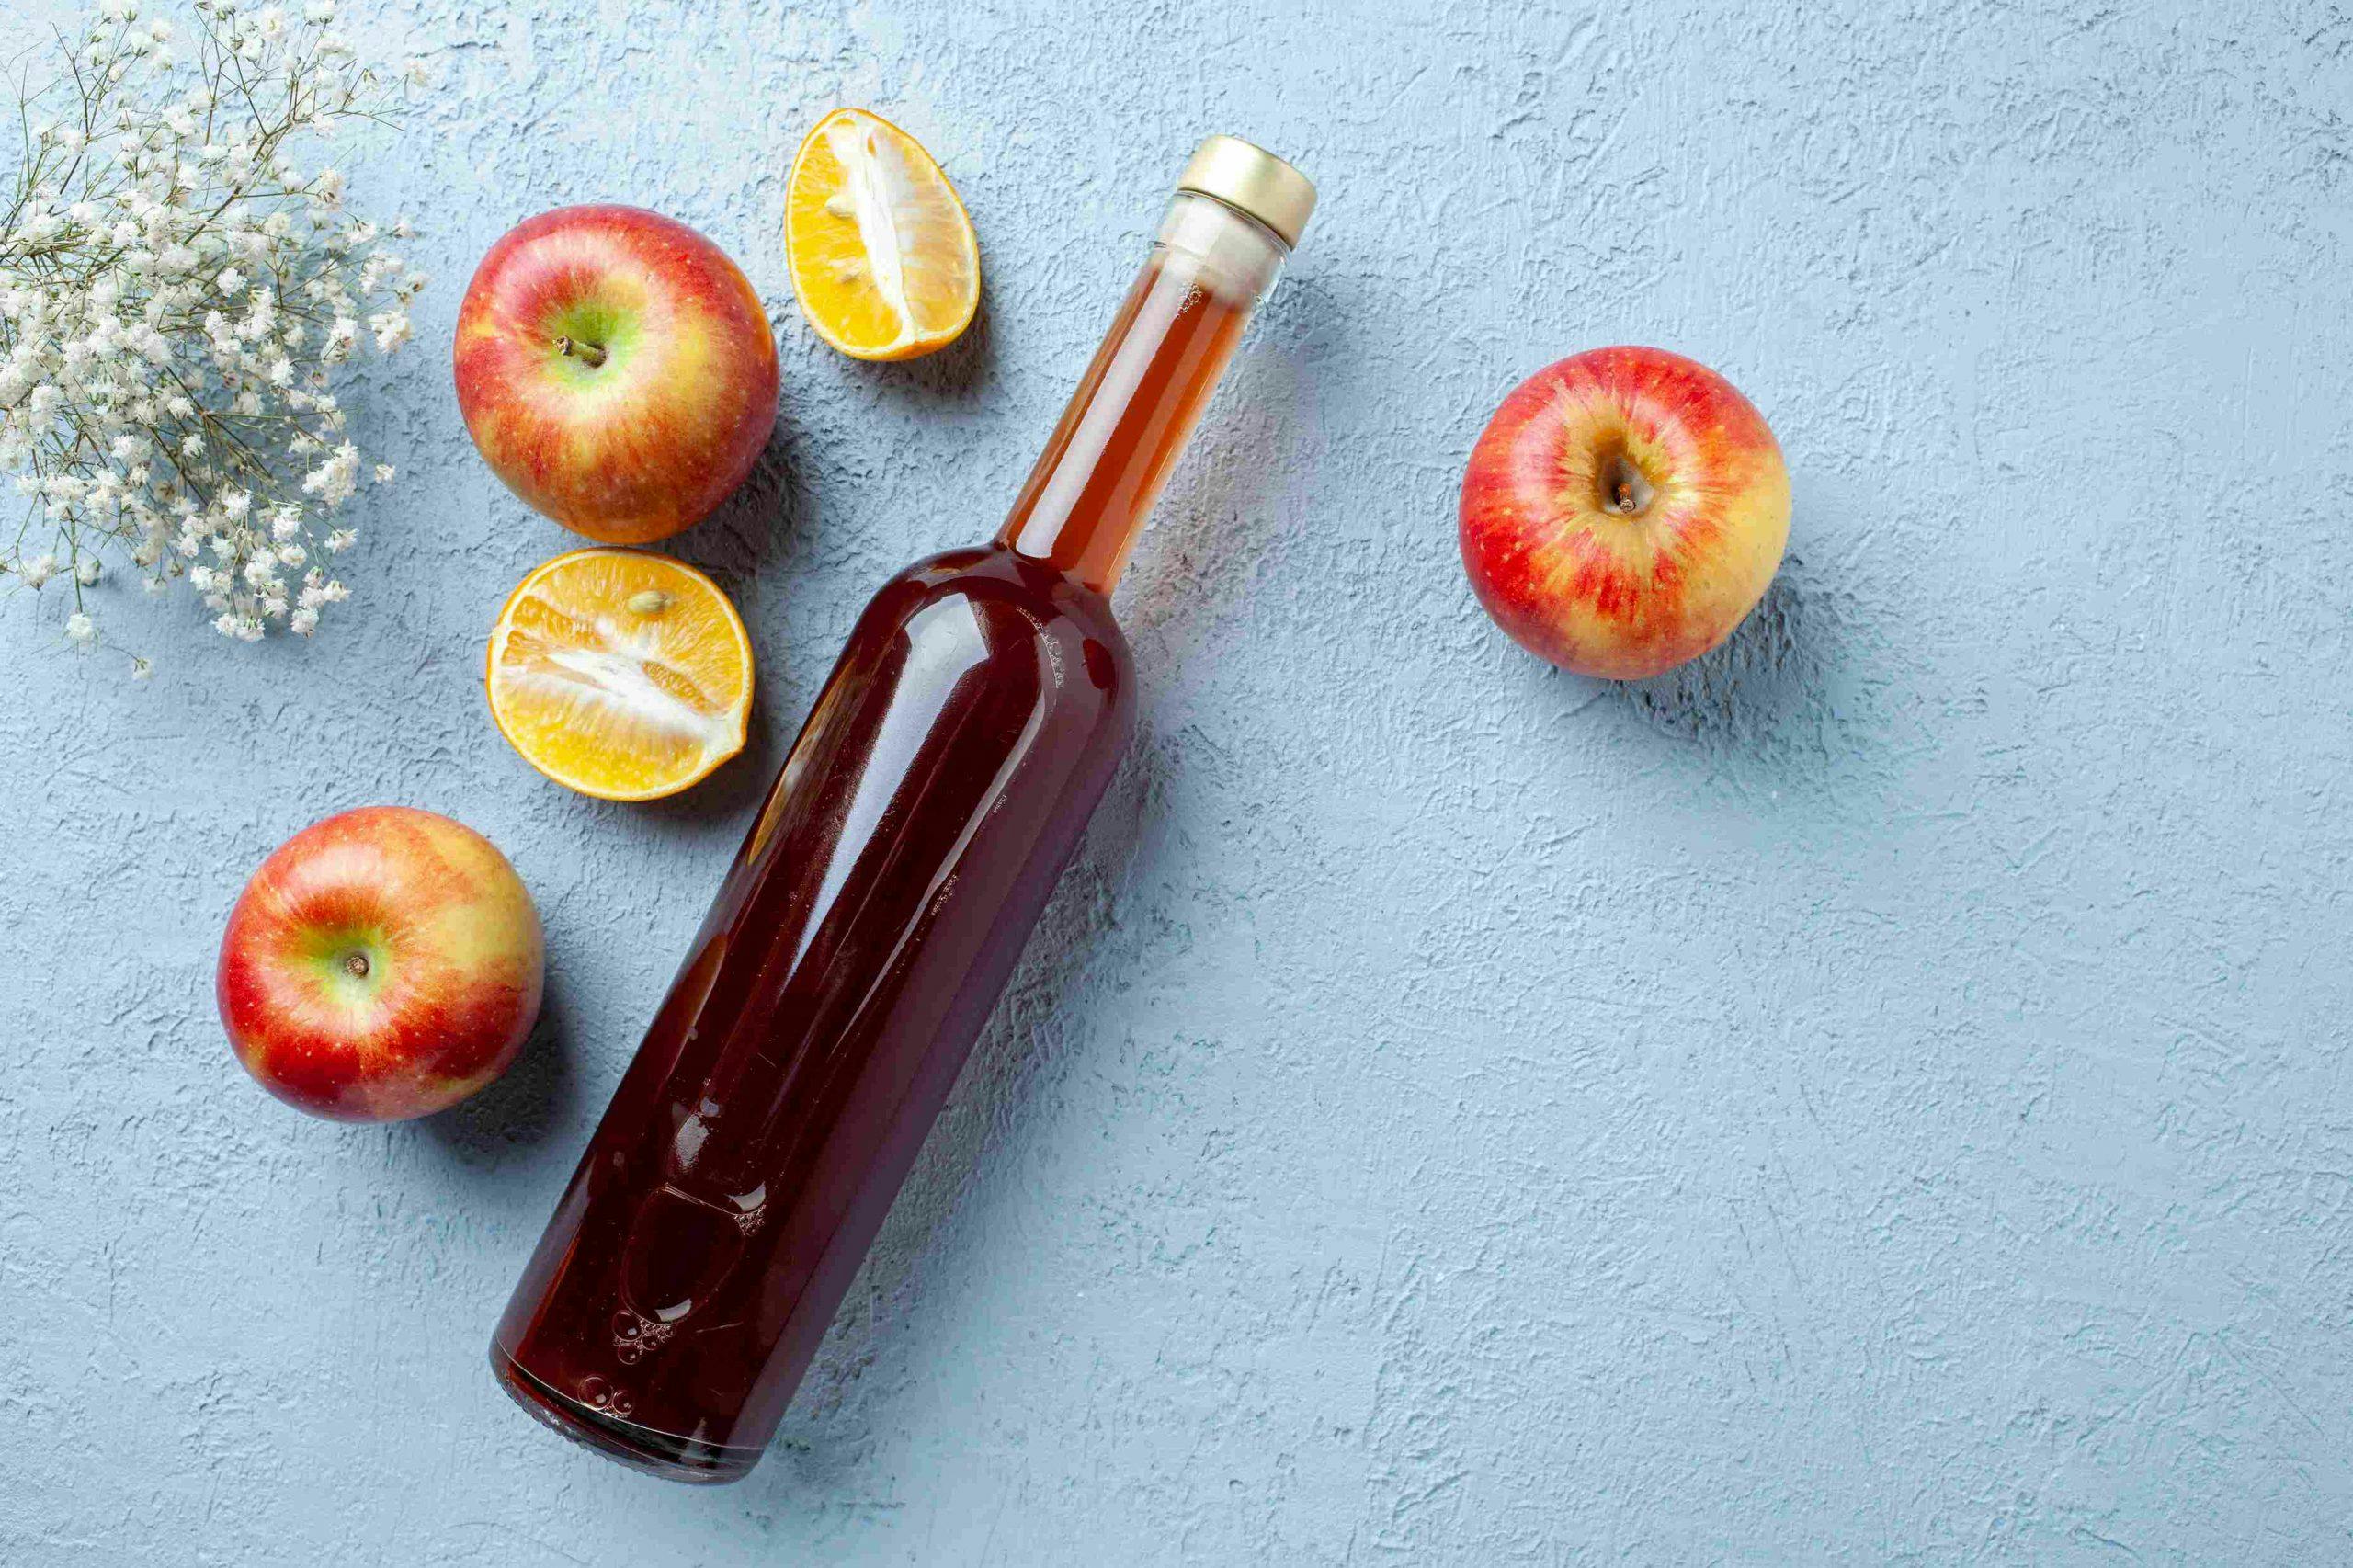 Best Time To Drink Apple Cider Vinegar